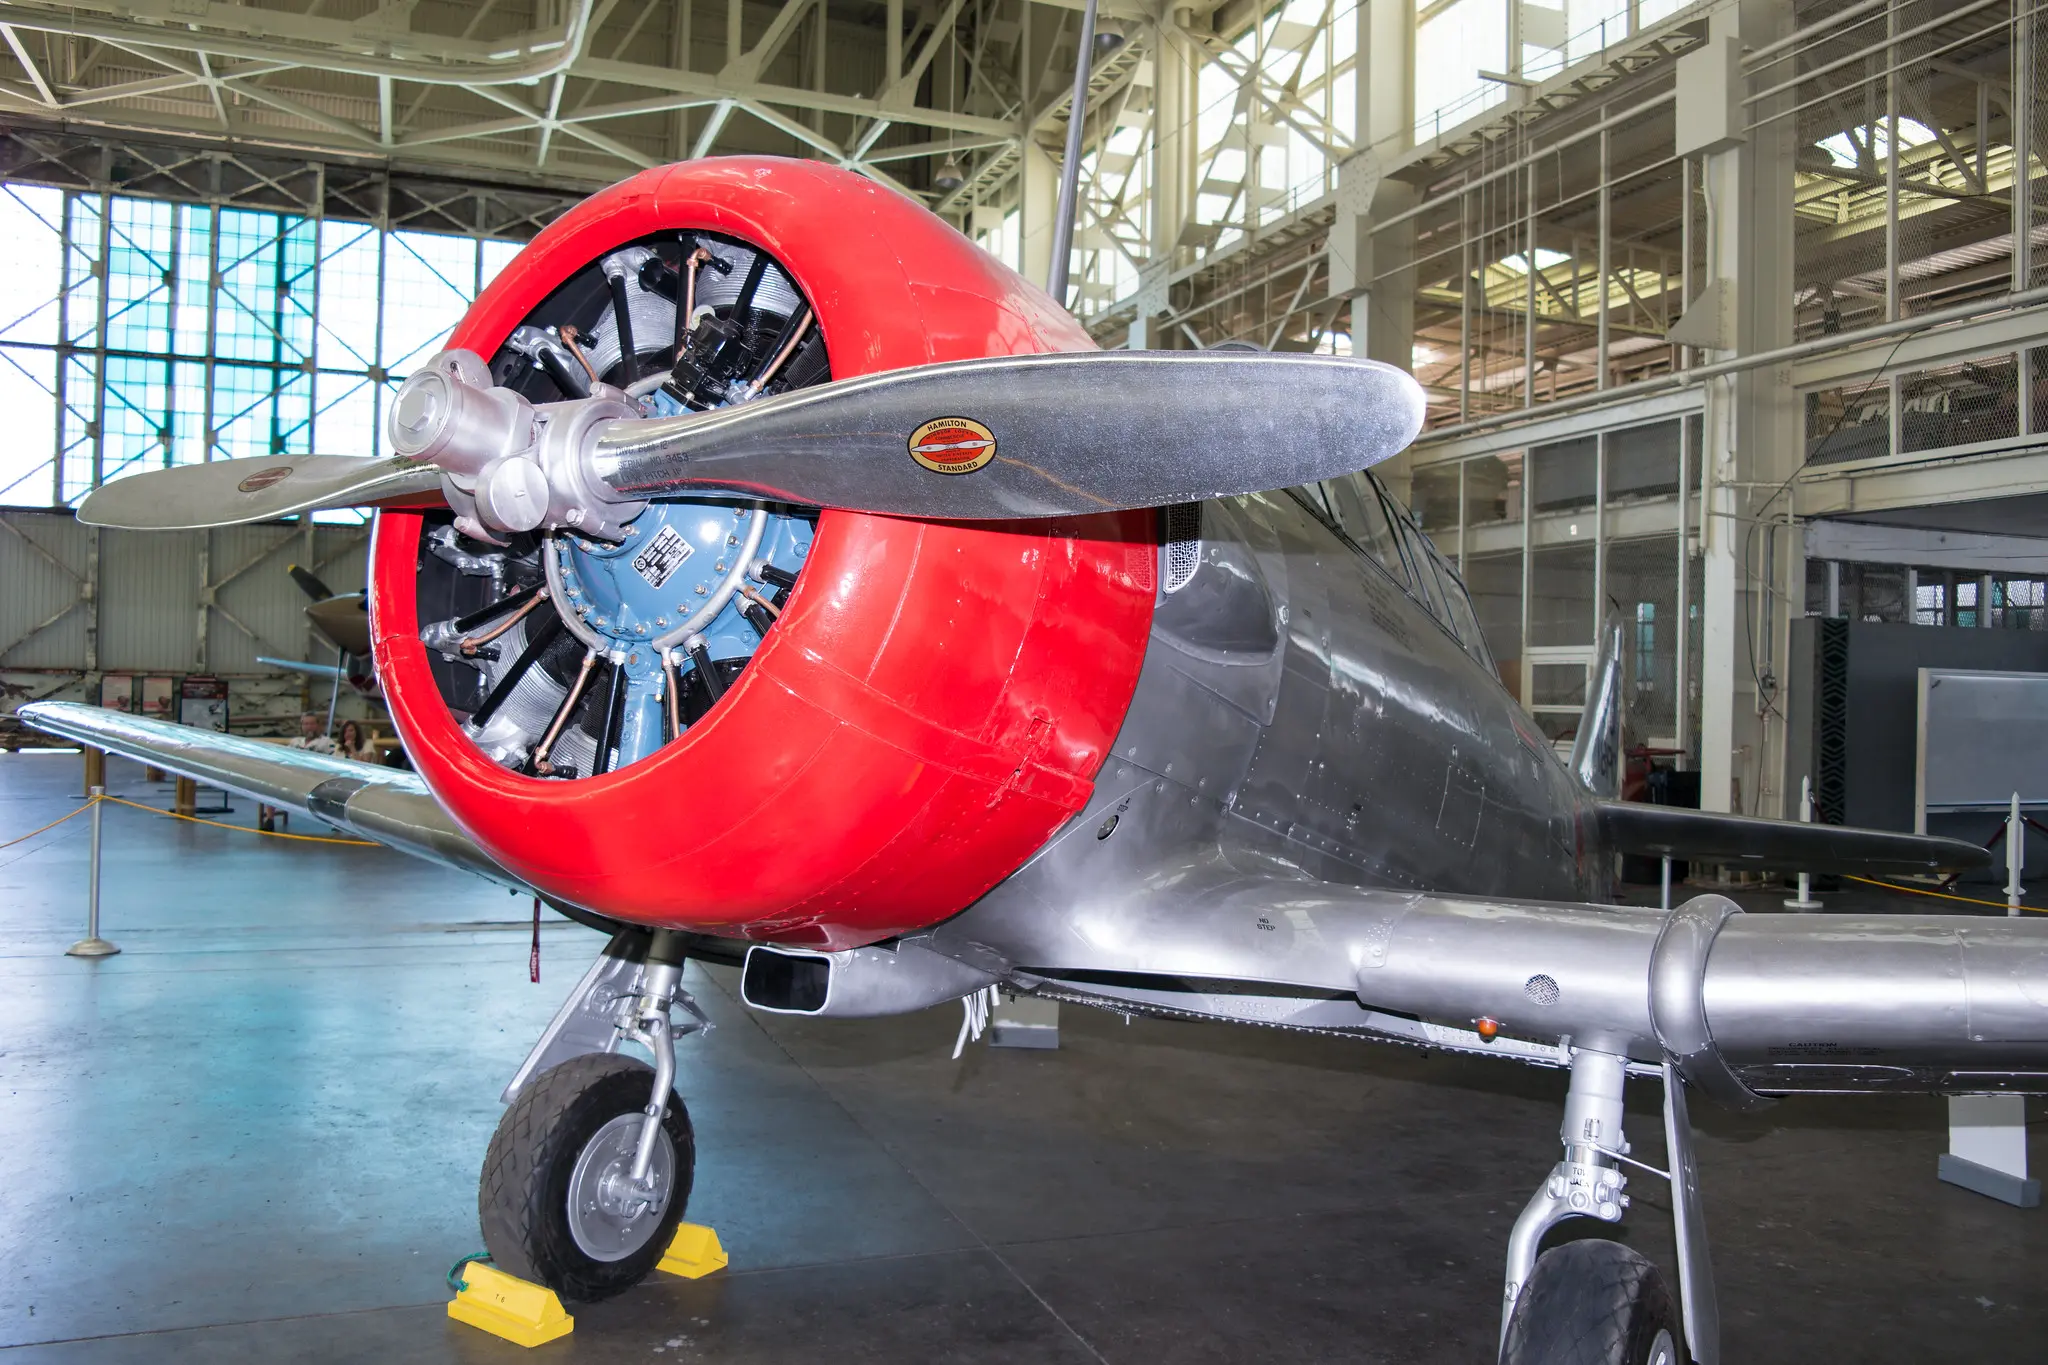 Close up photograph of T-6 aircraft displayed inside of a hangar.